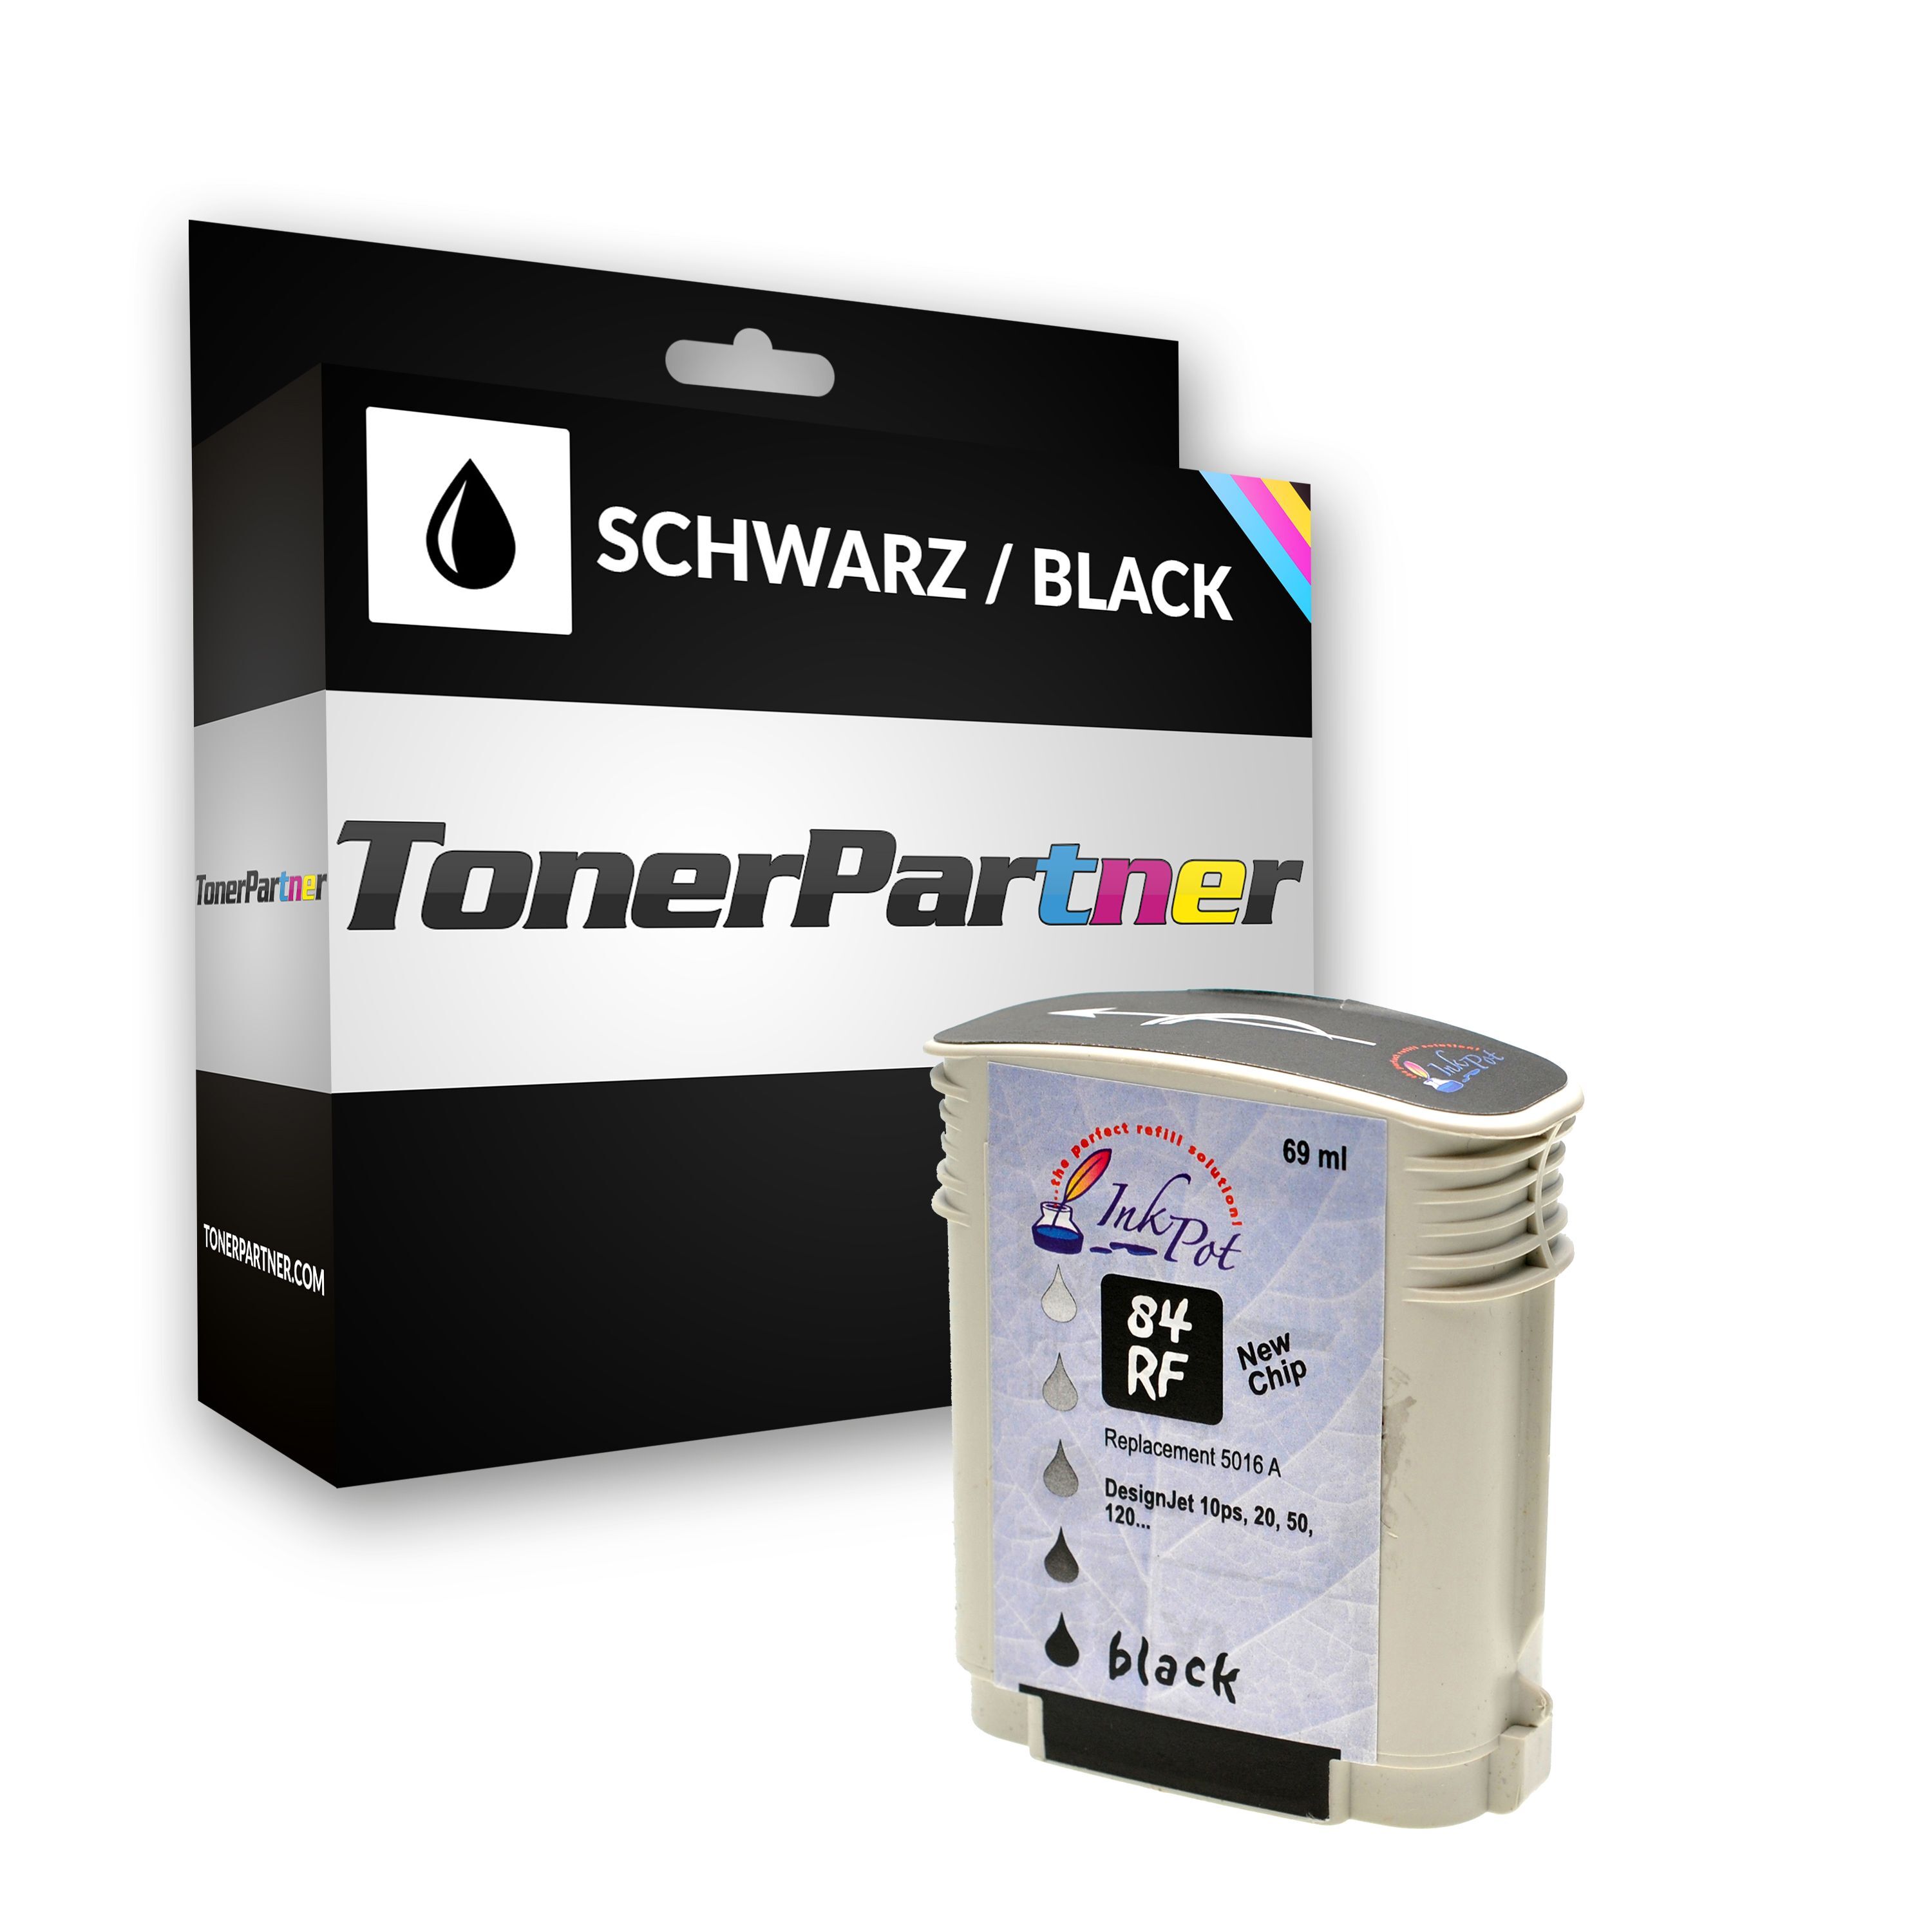 TonerPartner Compatible avec HP DesignJet 30 GP cartouche d'encre (84 / C 5016 A) noir, contenu: 69 ml de TonerPartner